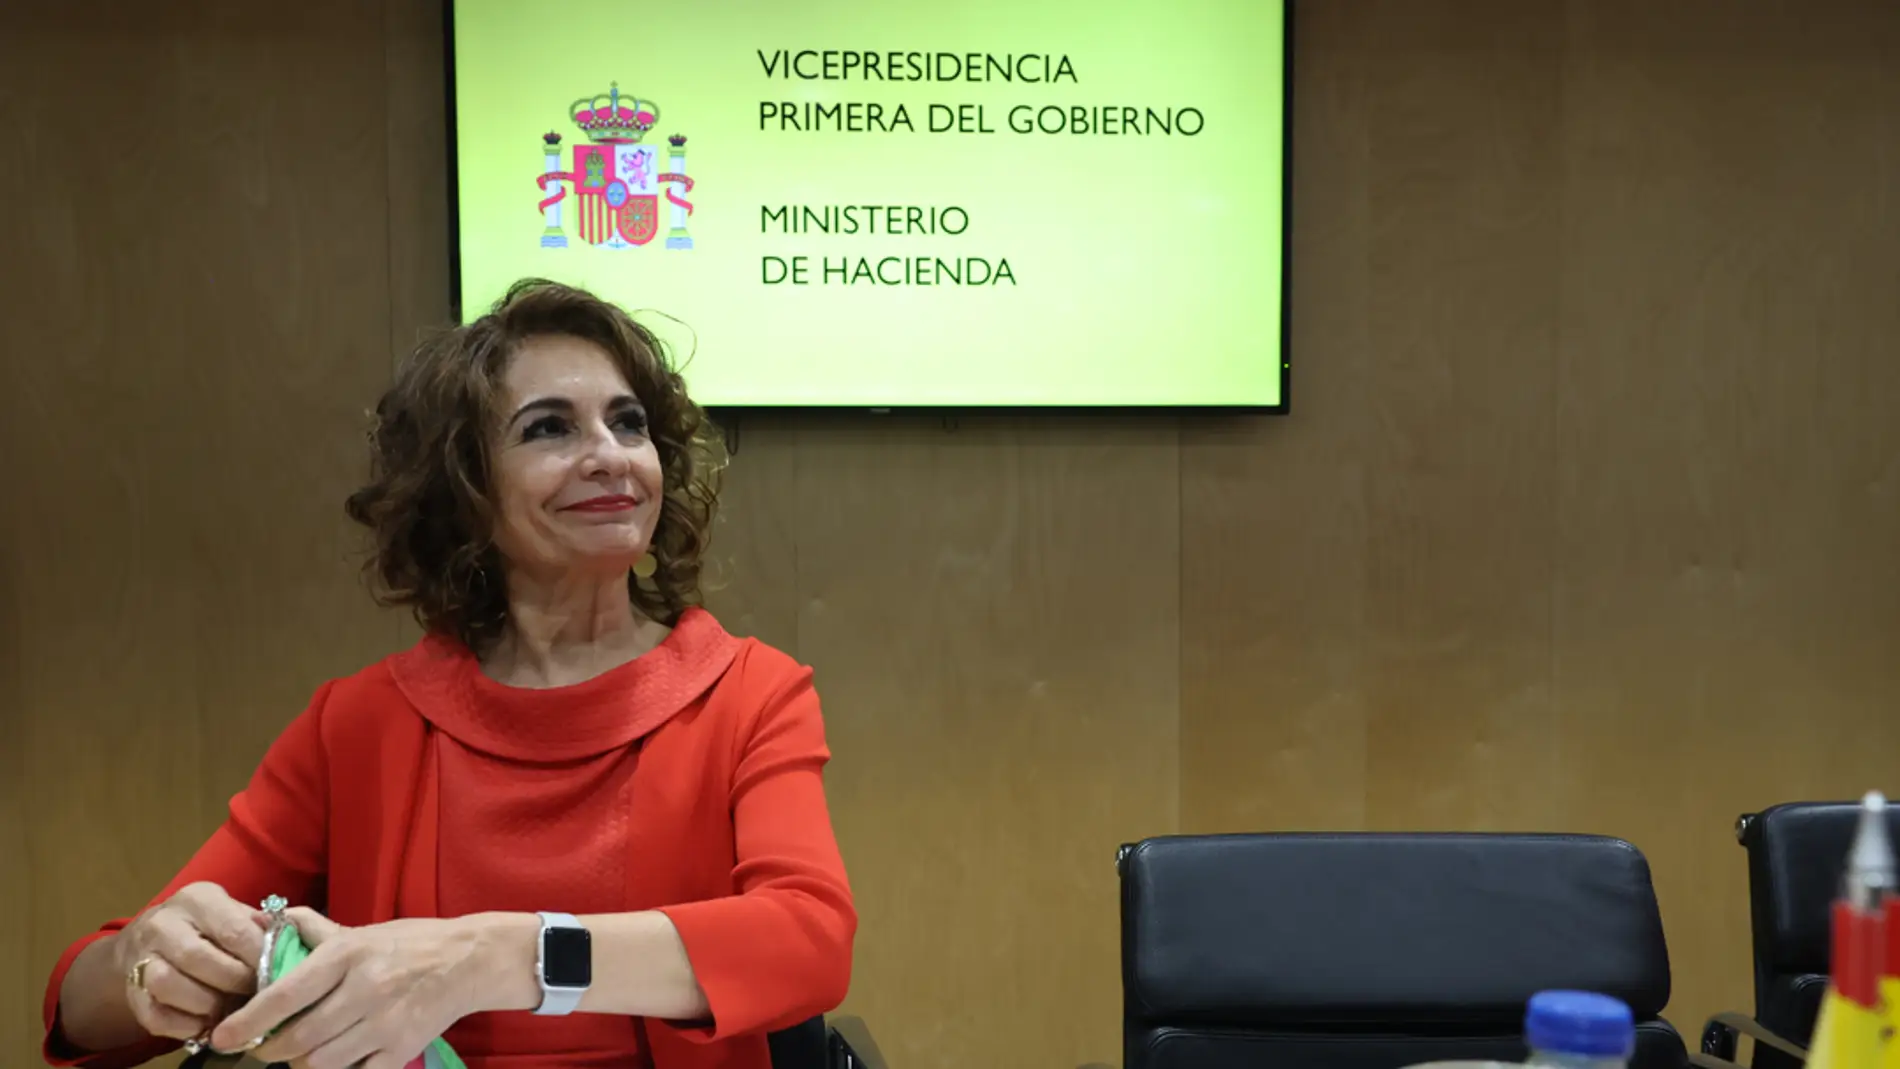  La vicepresidenta primera del Gobierno y ministra de Hacienda, María Jesús Montero, preside el Consejo de Política Fiscal y Financiera (CPFF)